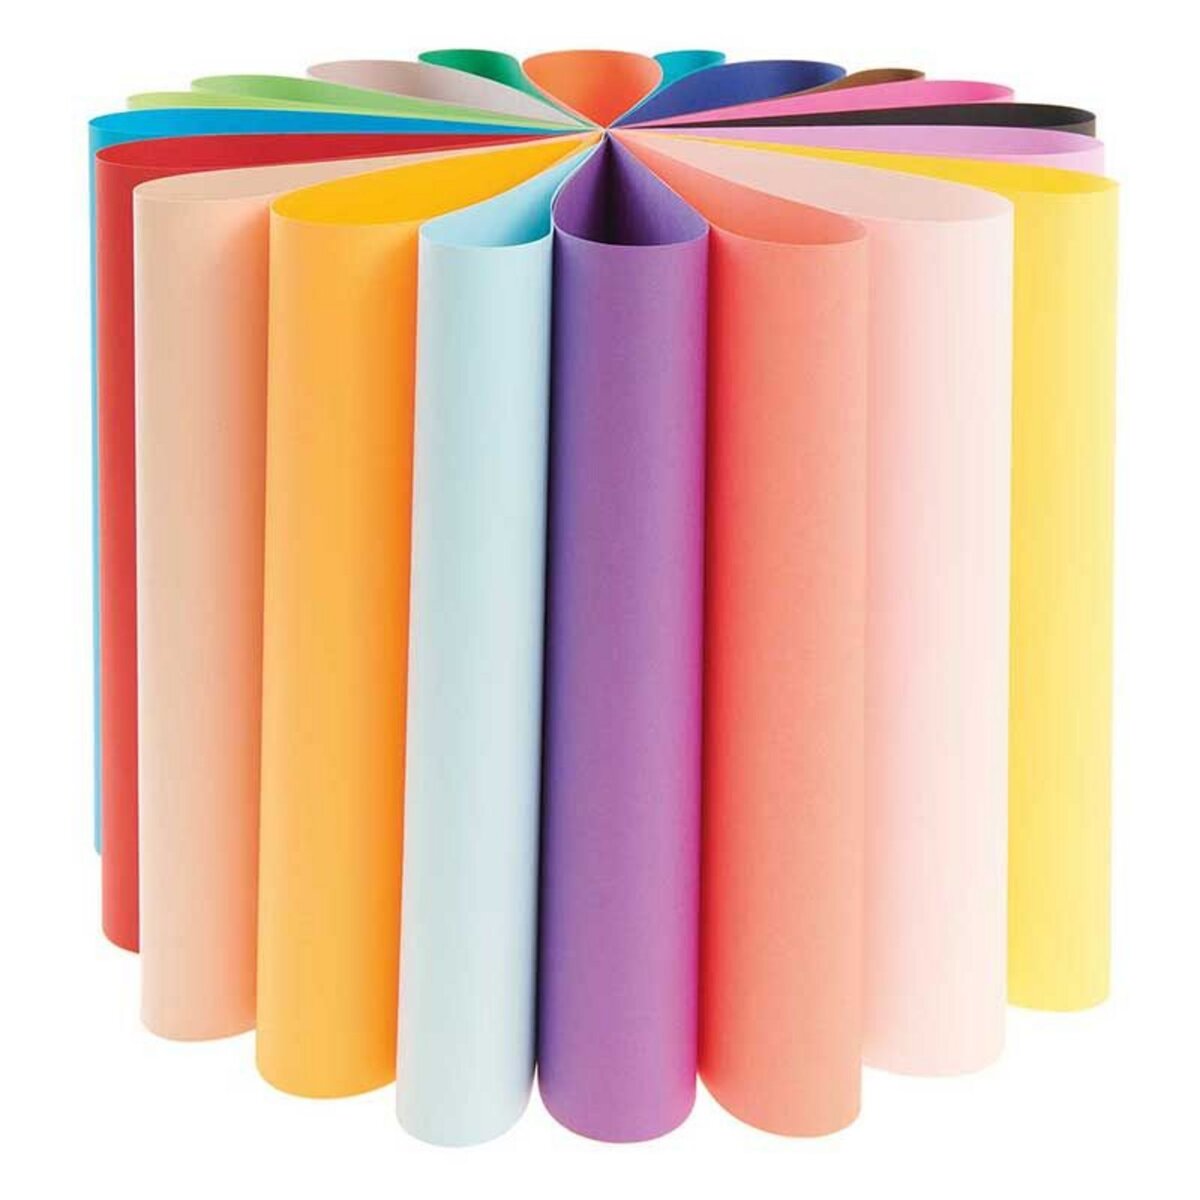 RICO DESIGN 20 feuilles de papier A3 160 g - Multicolore